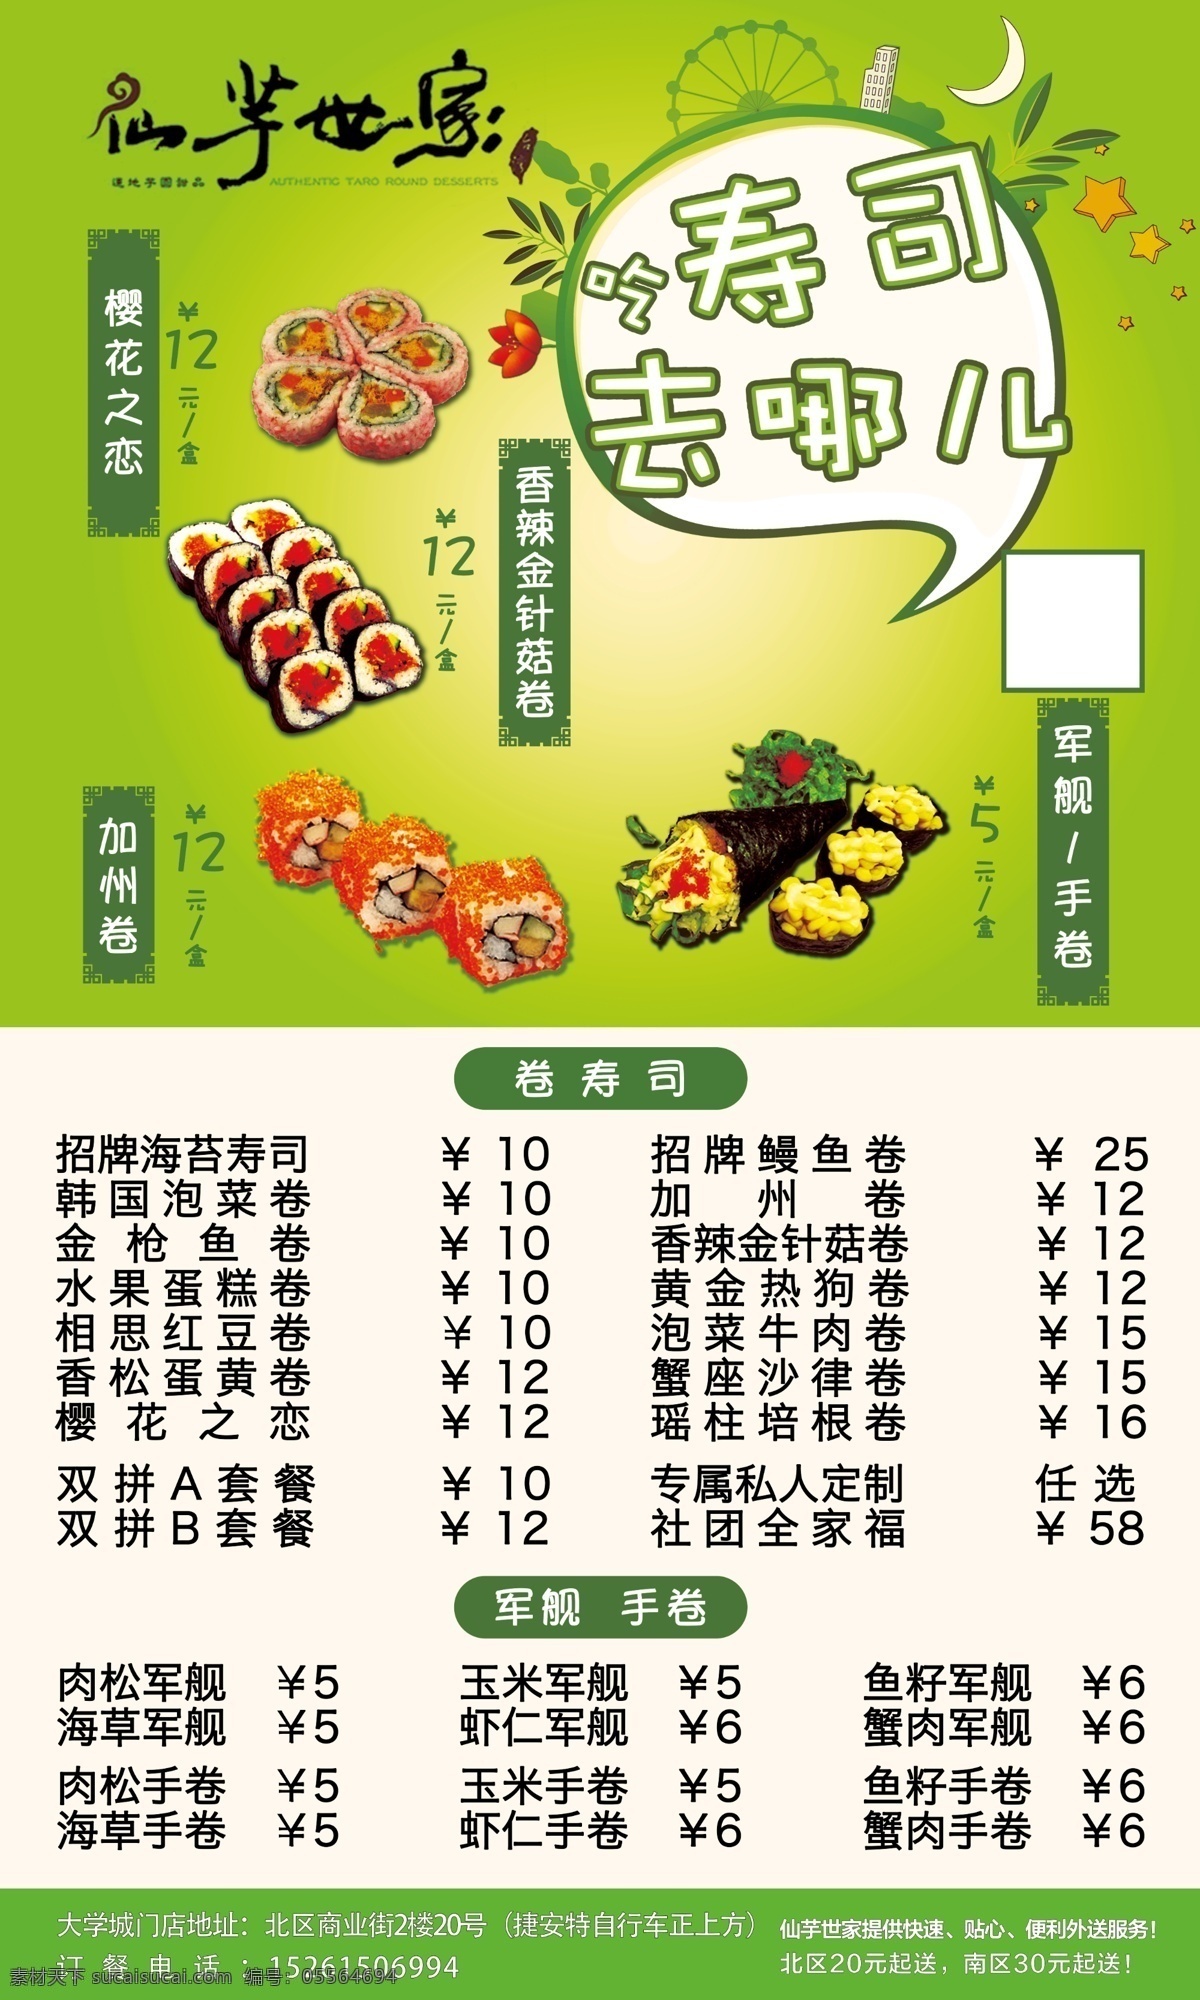 寿司海报设计 寿司 海报 高清 绿色 价目 广告设计模板 源文件